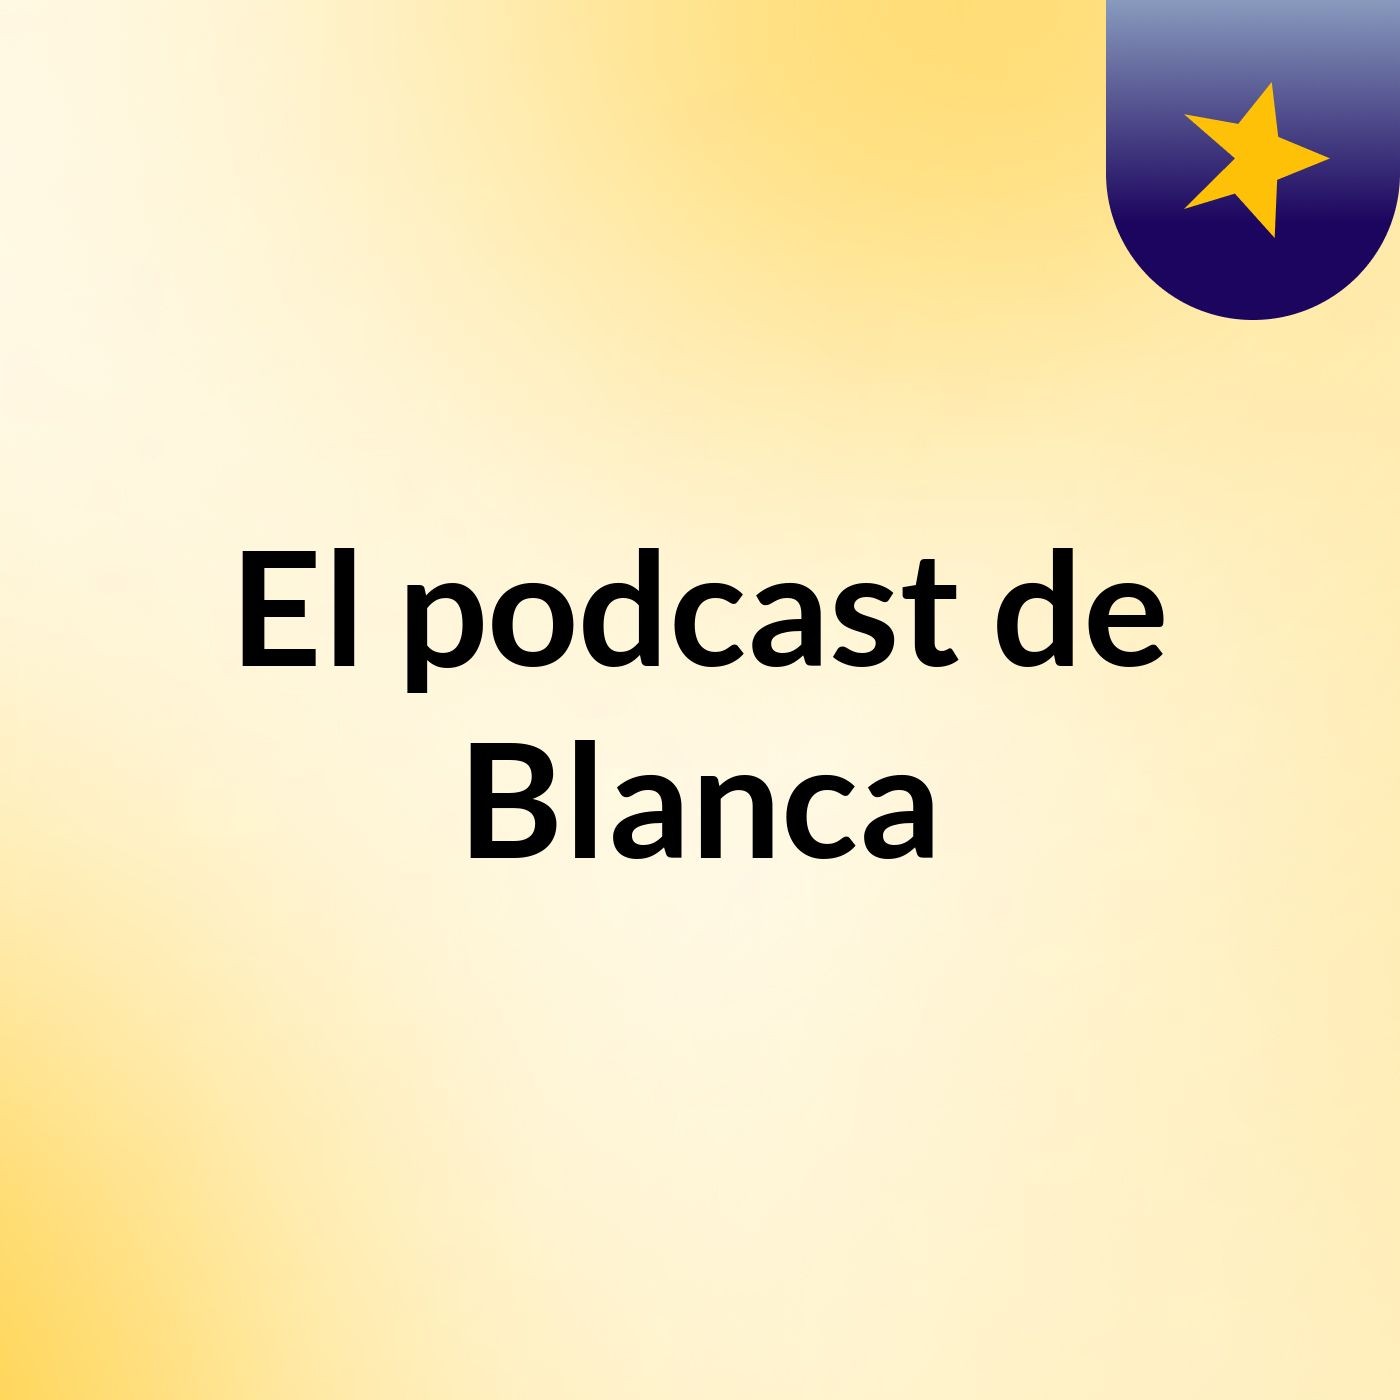 El podcast de Blanca